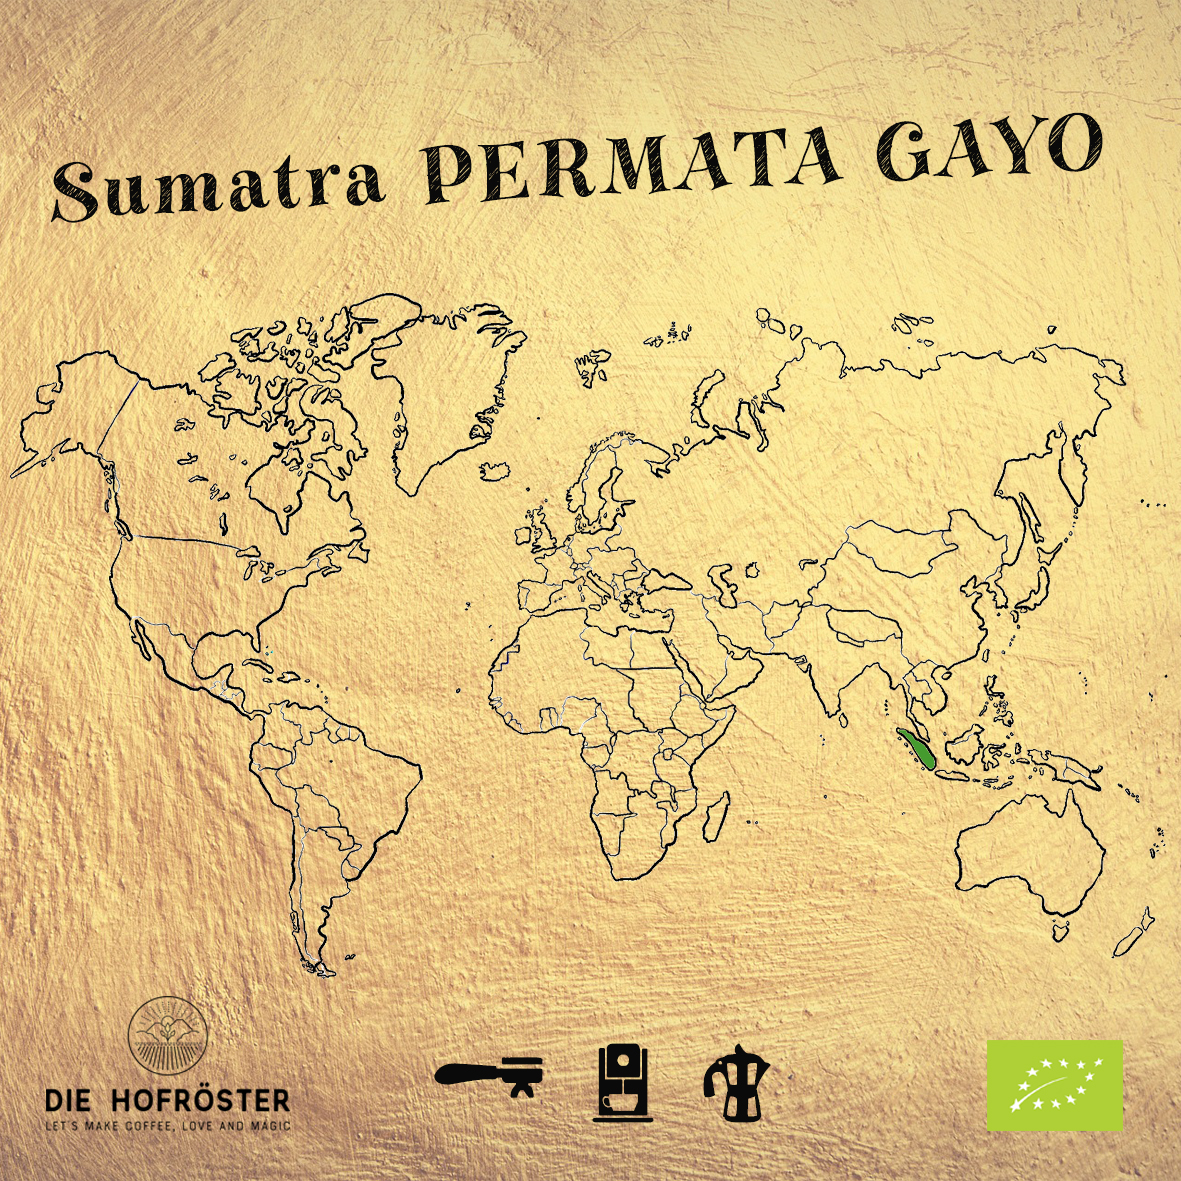 Sumatra Permata Gayo